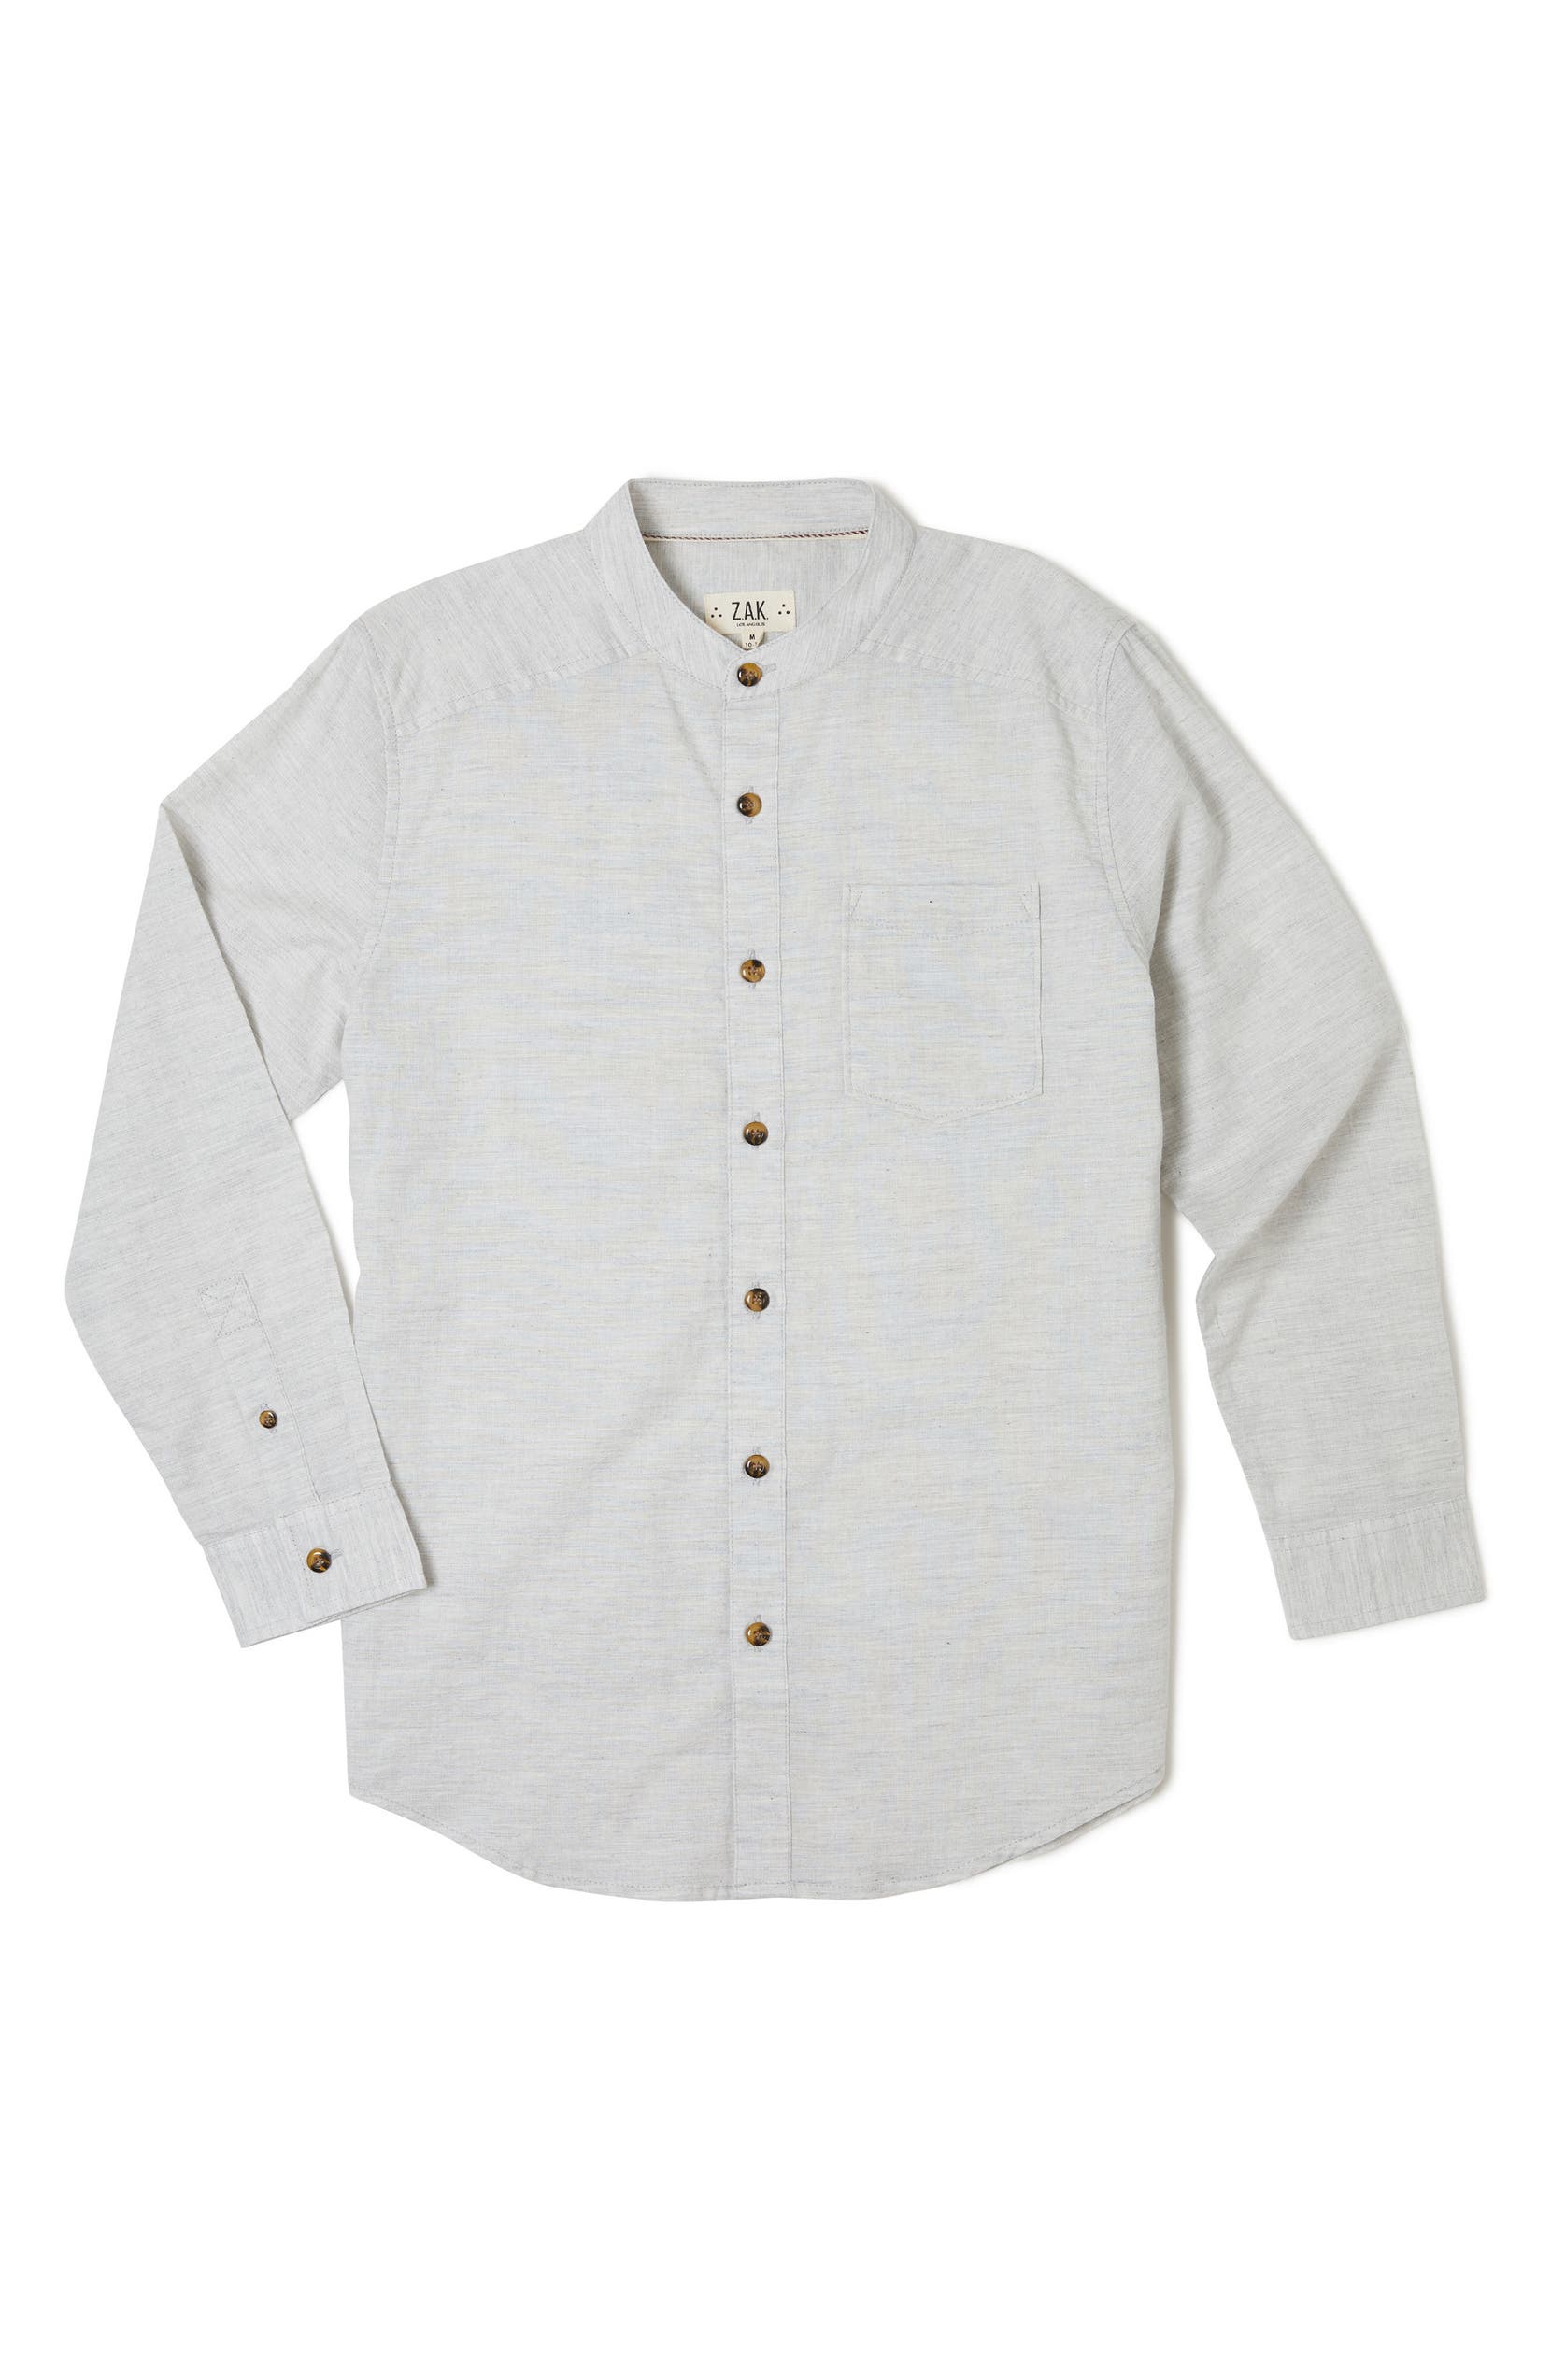 Rancho Long Sleeve Shirt, Main, color, Grey